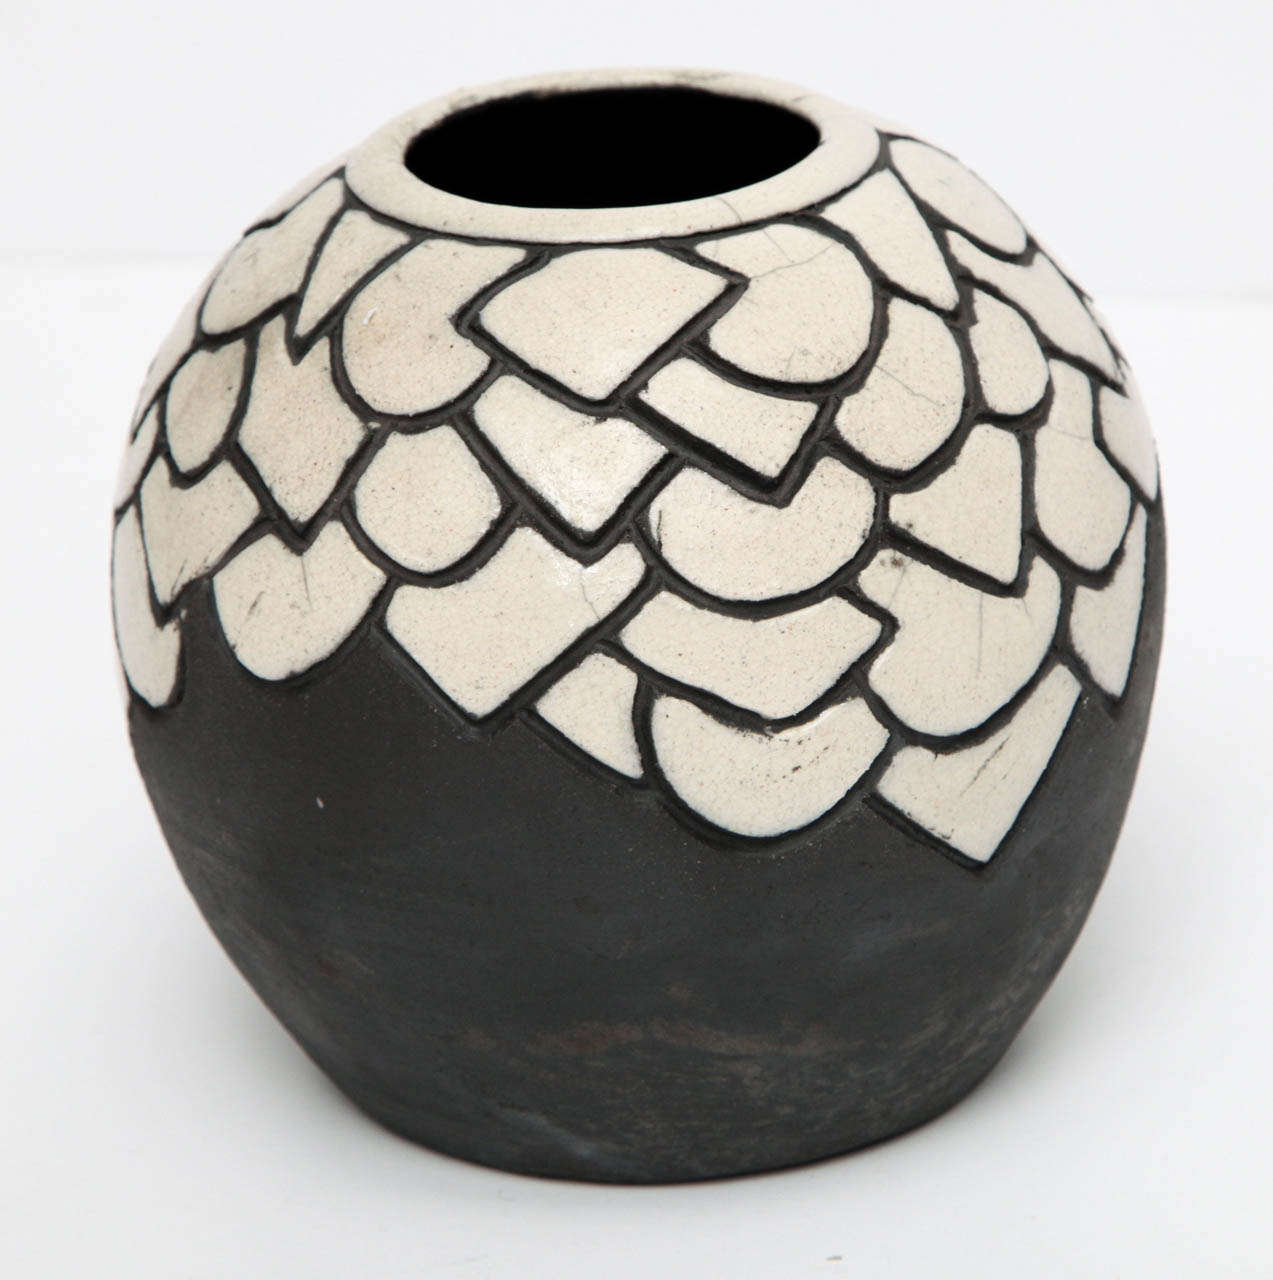 Raku ceramic with white enamel decor

Marked on the underside